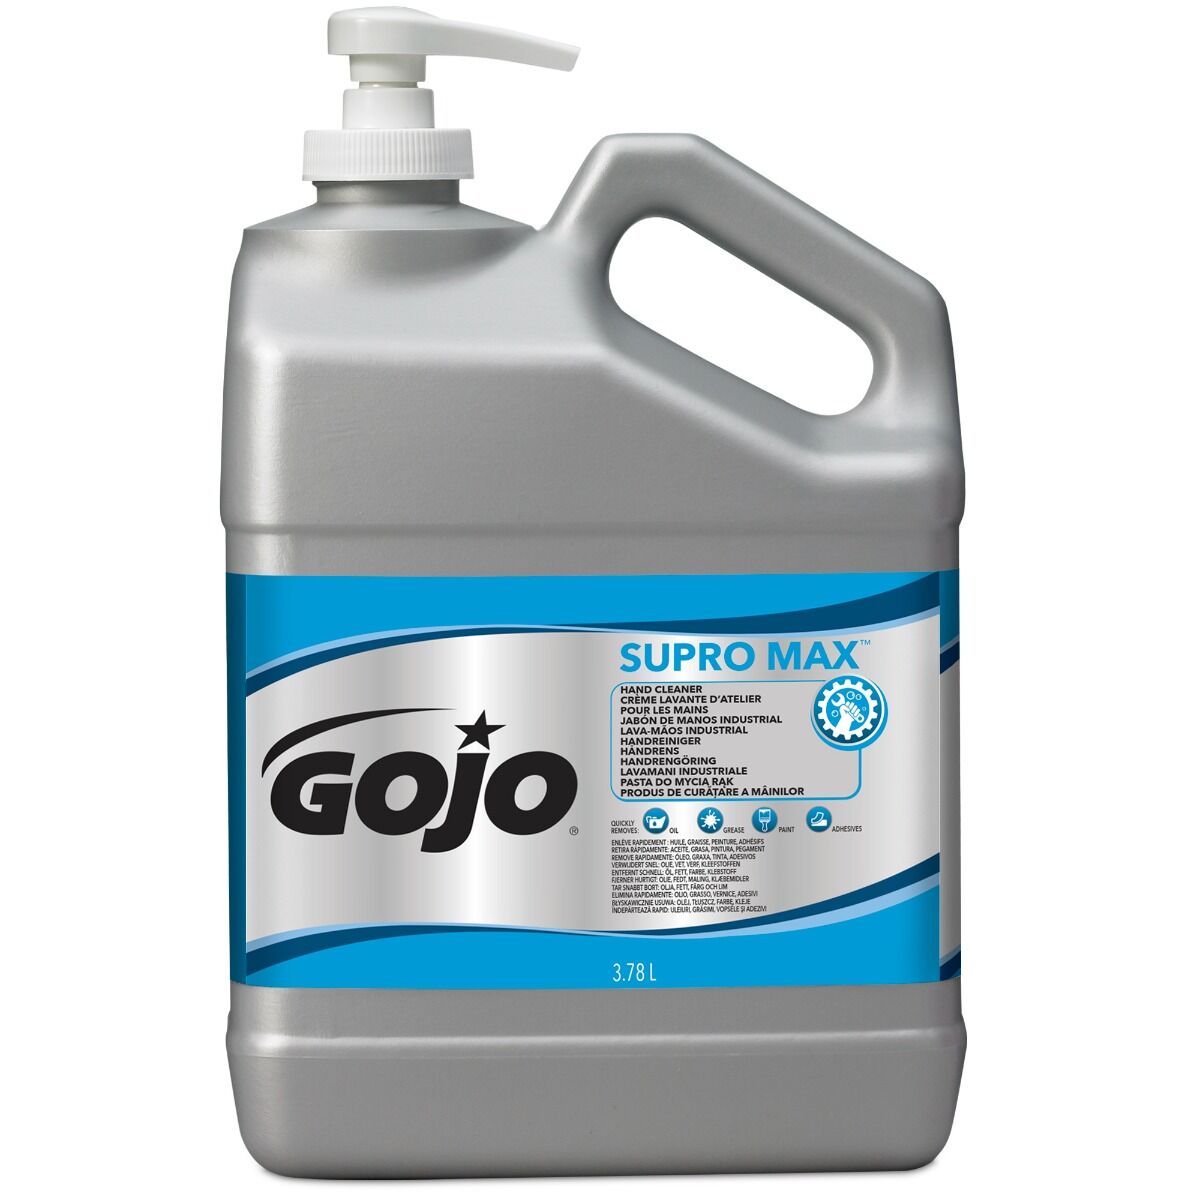 GOJO® SUPRO MAX™ kätepuhastusvahend 3780ml, kastis 2tk